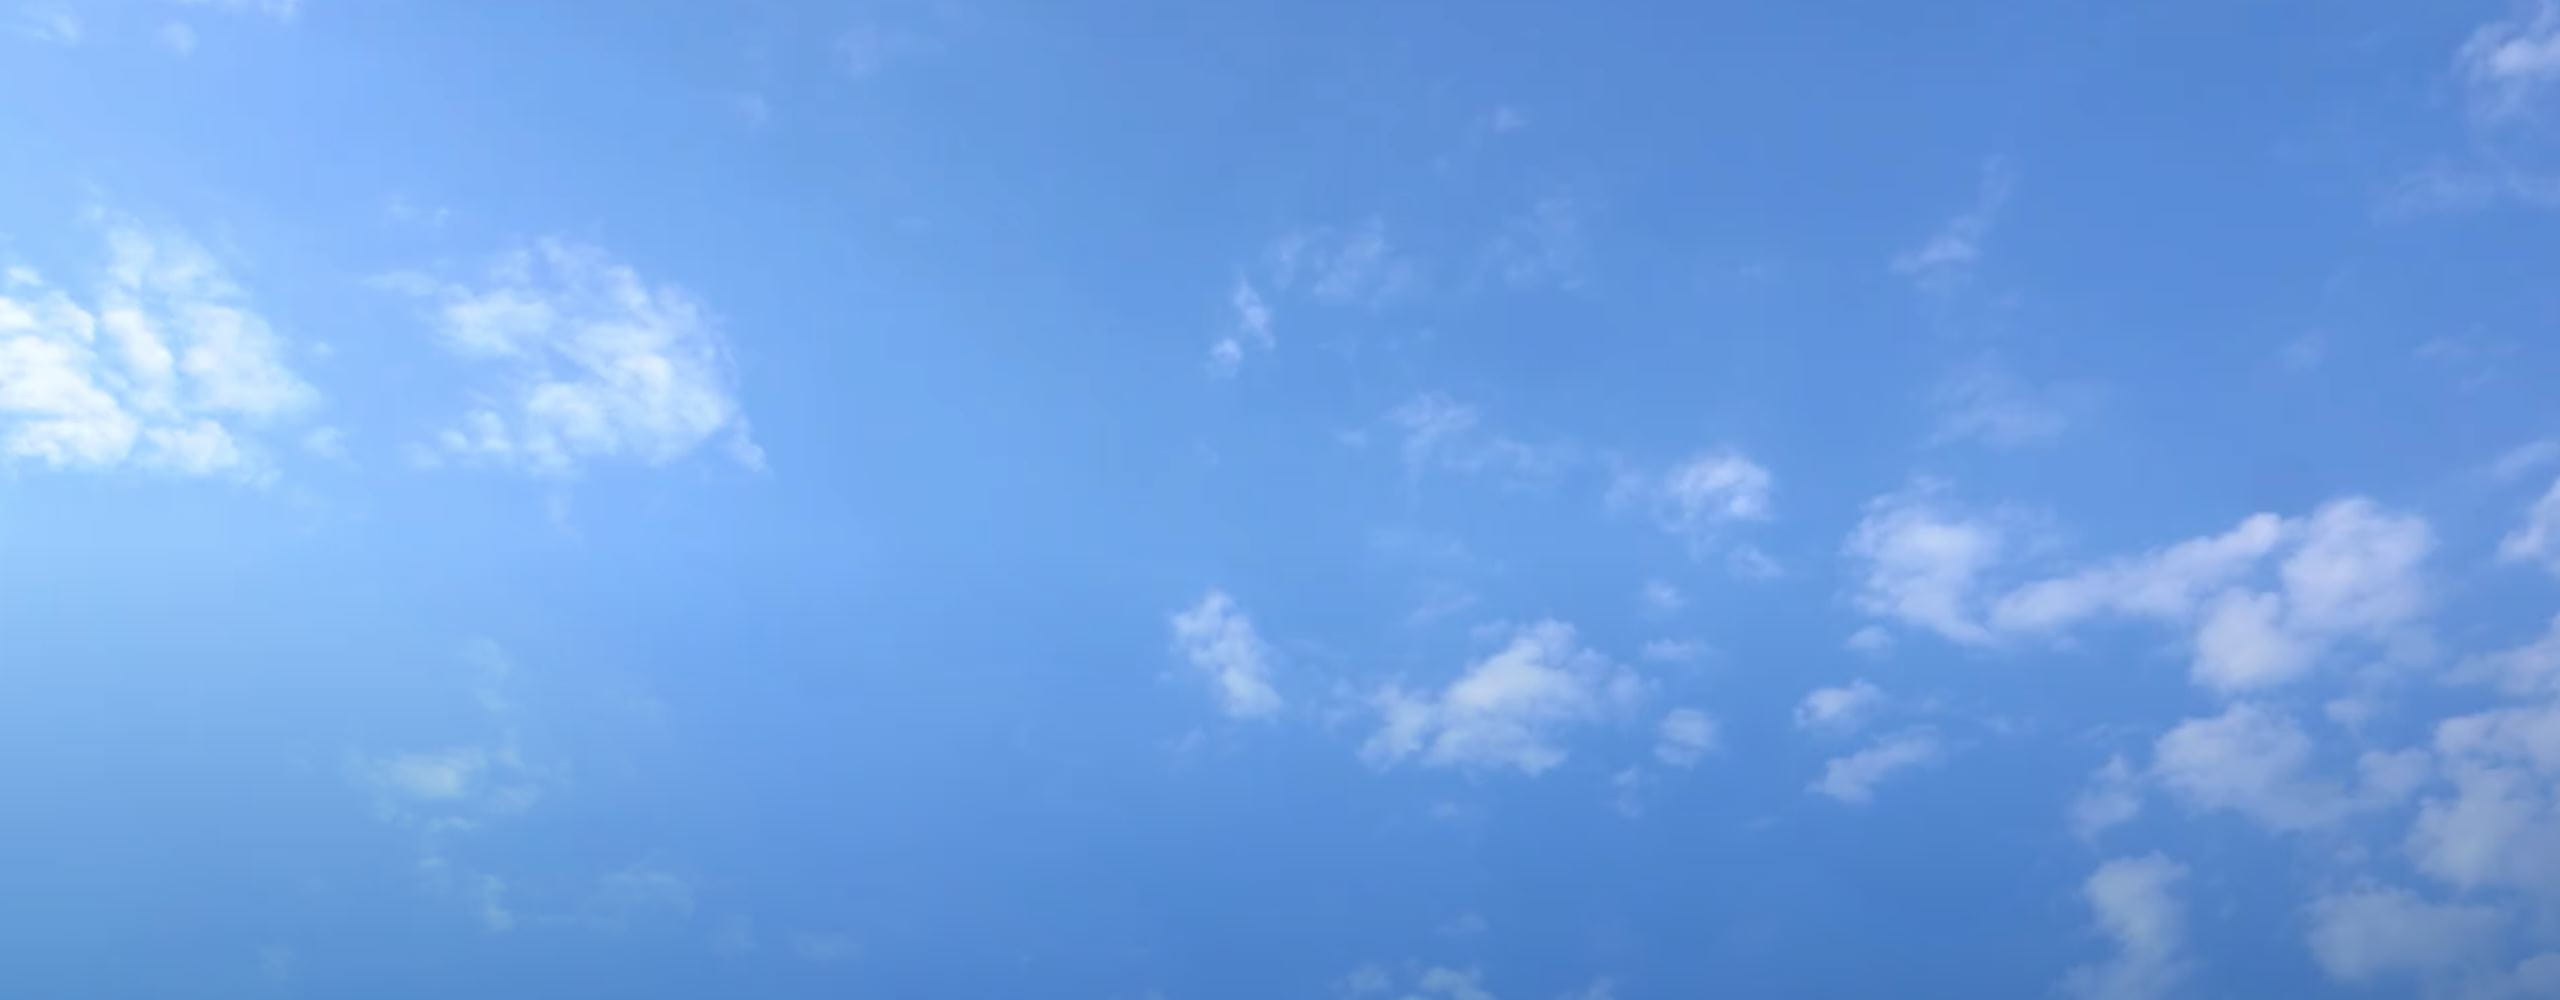 céu azul com poucas nuvens